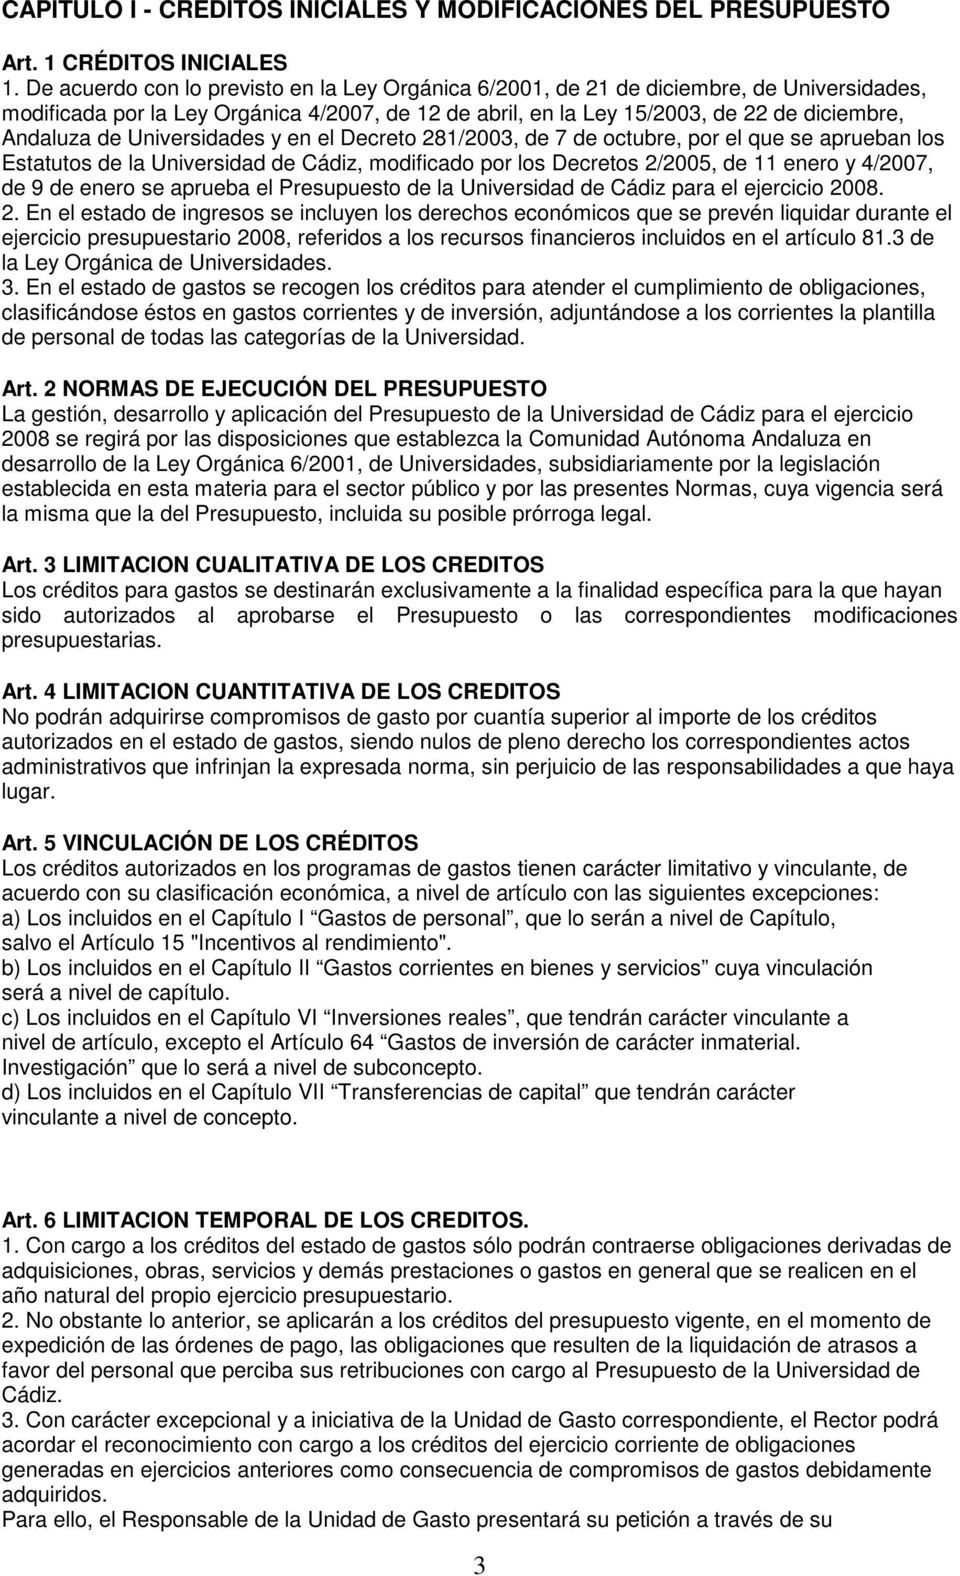 Universidades y en el Decreto 281/2003, de 7 de octubre, por el que se aprueban los Estatutos de la Universidad de Cádiz, modificado por los Decretos 2/2005, de 11 enero y 4/2007, de 9 de enero se